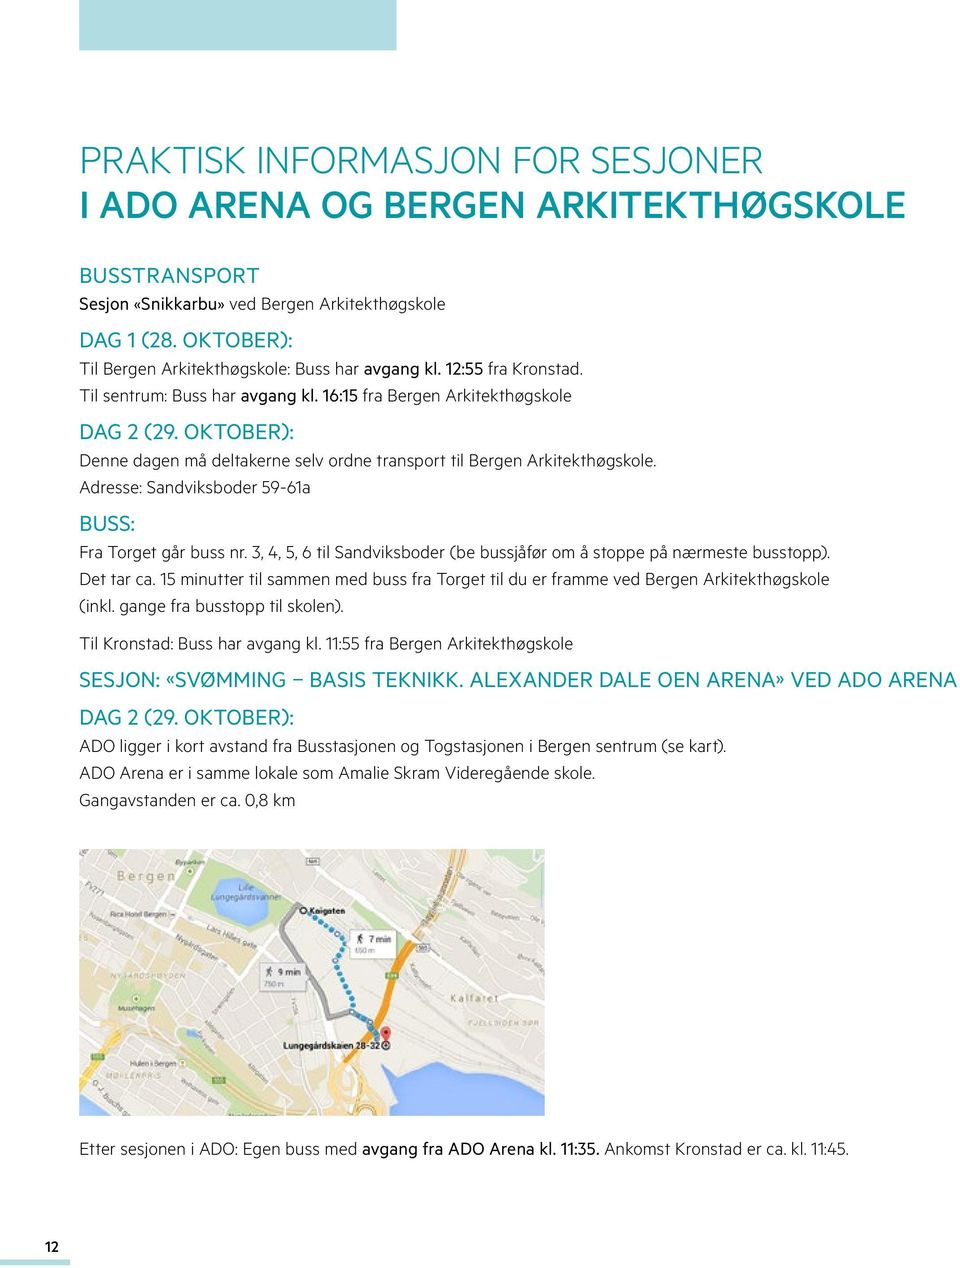 OKTOBER): Denne dagen må deltakerne selv ordne transport til Bergen Arkitekthøgskole. Adresse: Sandviksboder 59-61a BUSS: Fra Torget går buss nr.